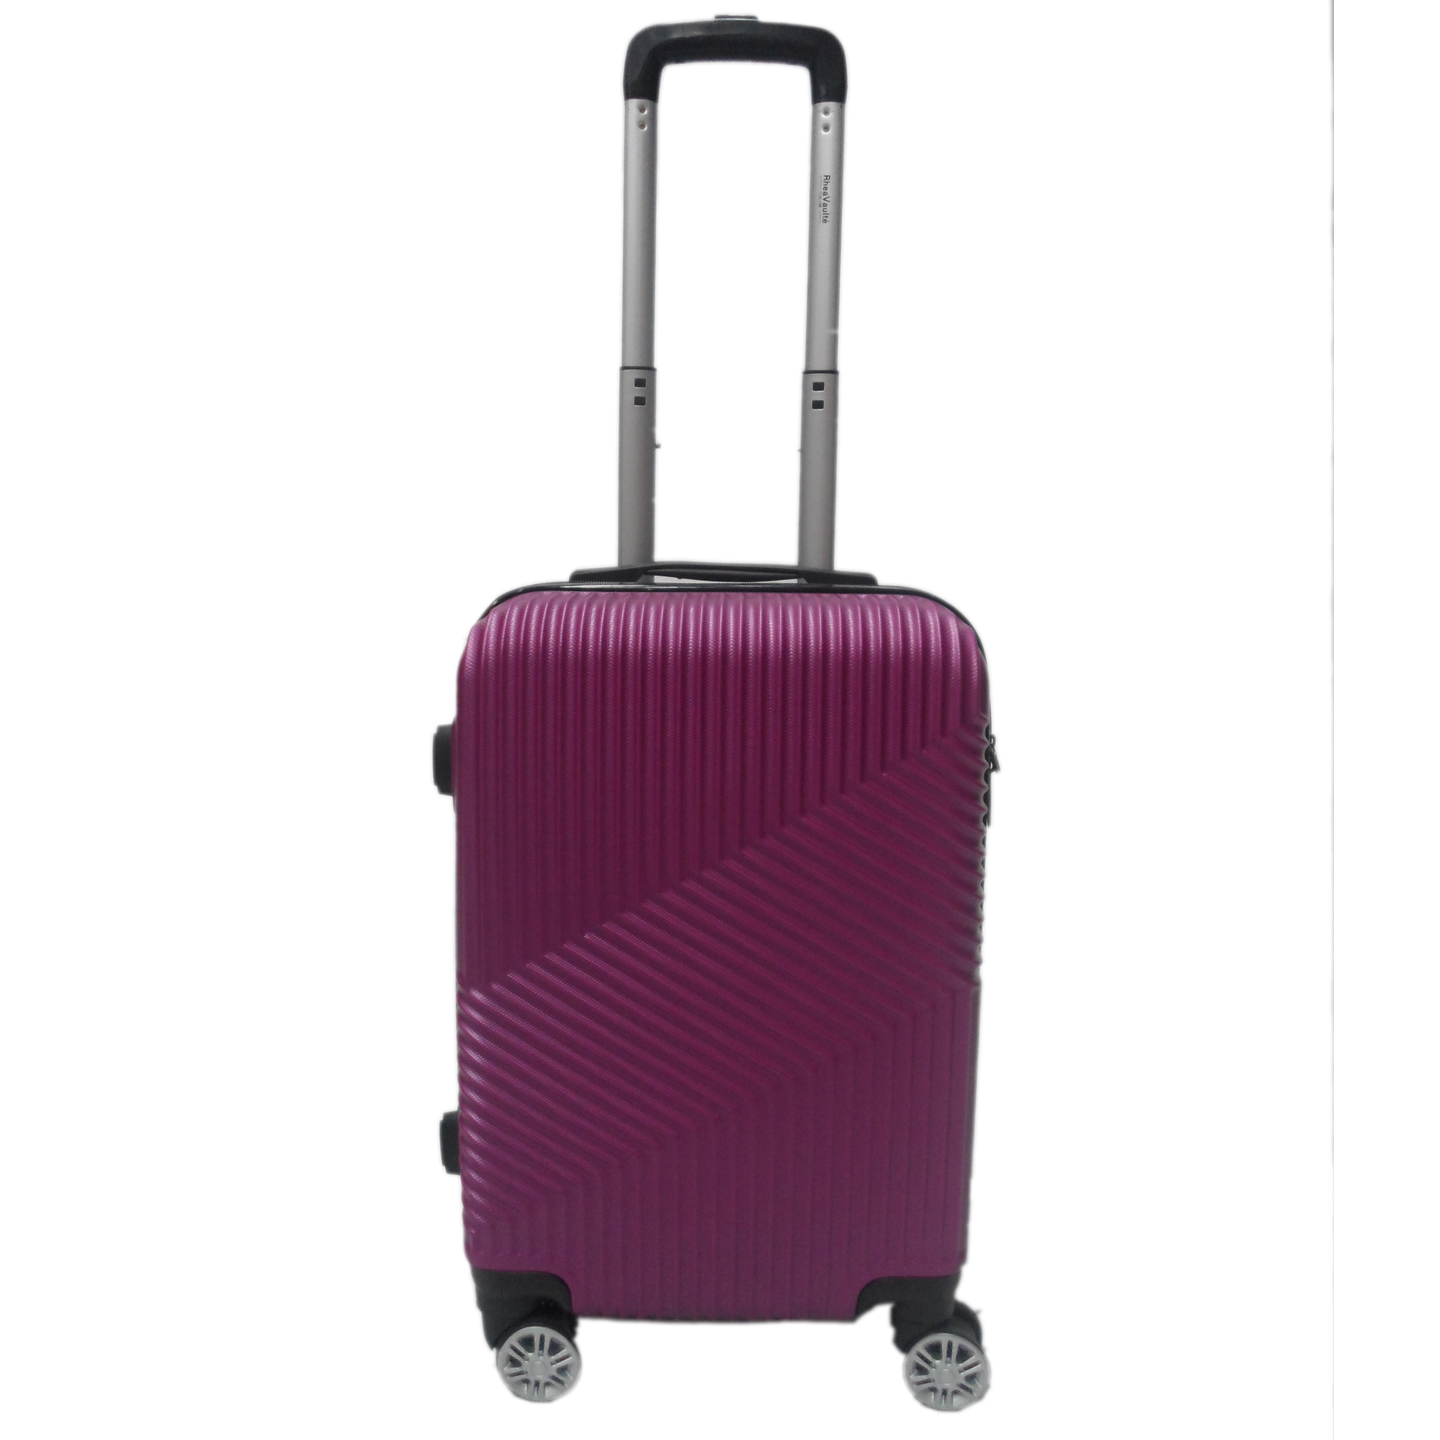 RV-51 Elegant Hard Box Luggage - Purple  20 inch